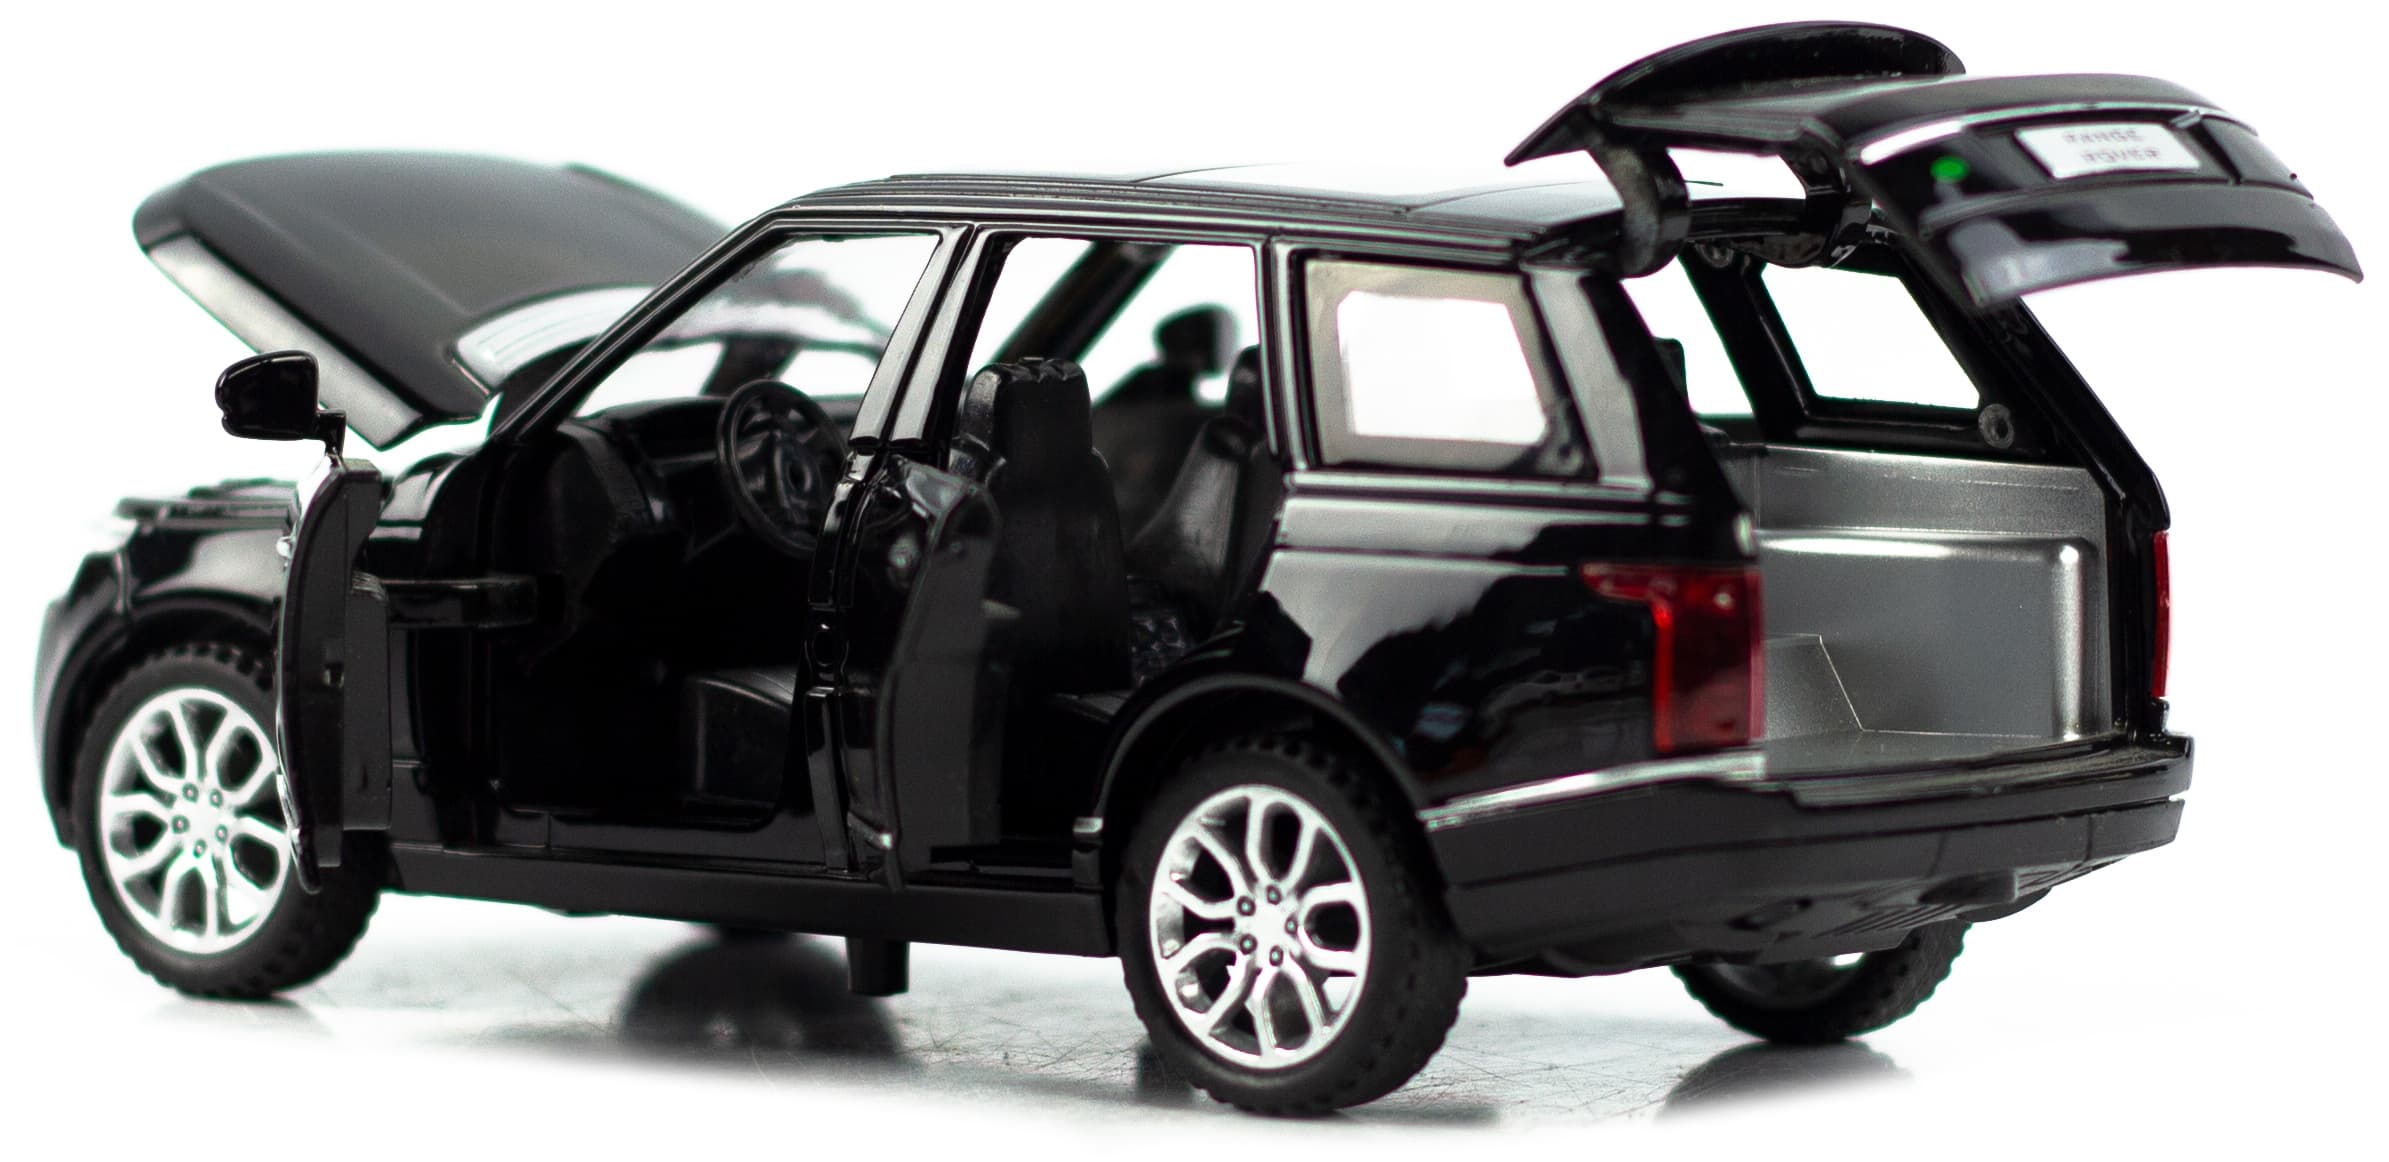 Машинка металлическая Wanbao 1:32 «Land Rover Range Rover Sport» 15.5 см., 625D, инерционная, свет, звук / Черный